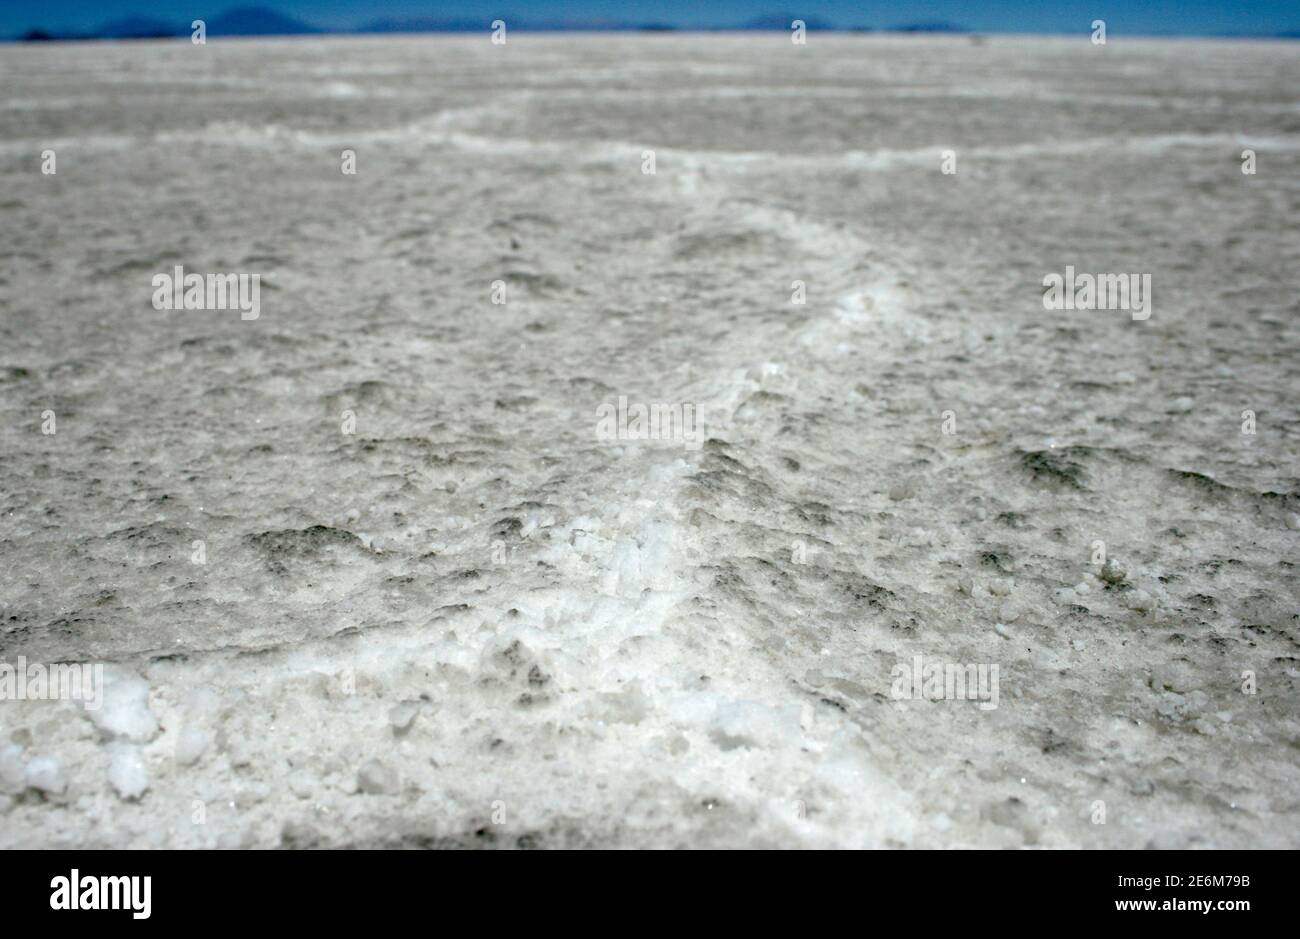 Uyuni, Bolivien. Oktober 2009. Die Salzkruste des Salar de Uyuni, aufgenommen am 17. Oktober 2009, in der Nähe von Uyuni, Bolivien. Der Salar de Uyuni ist die größte Salzpfanne der Welt und befindet sich in den bolivianischen Anden. Quelle: Hauke Schroder, weltweite Nutzung/dpa/Alamy Live News Stockfoto